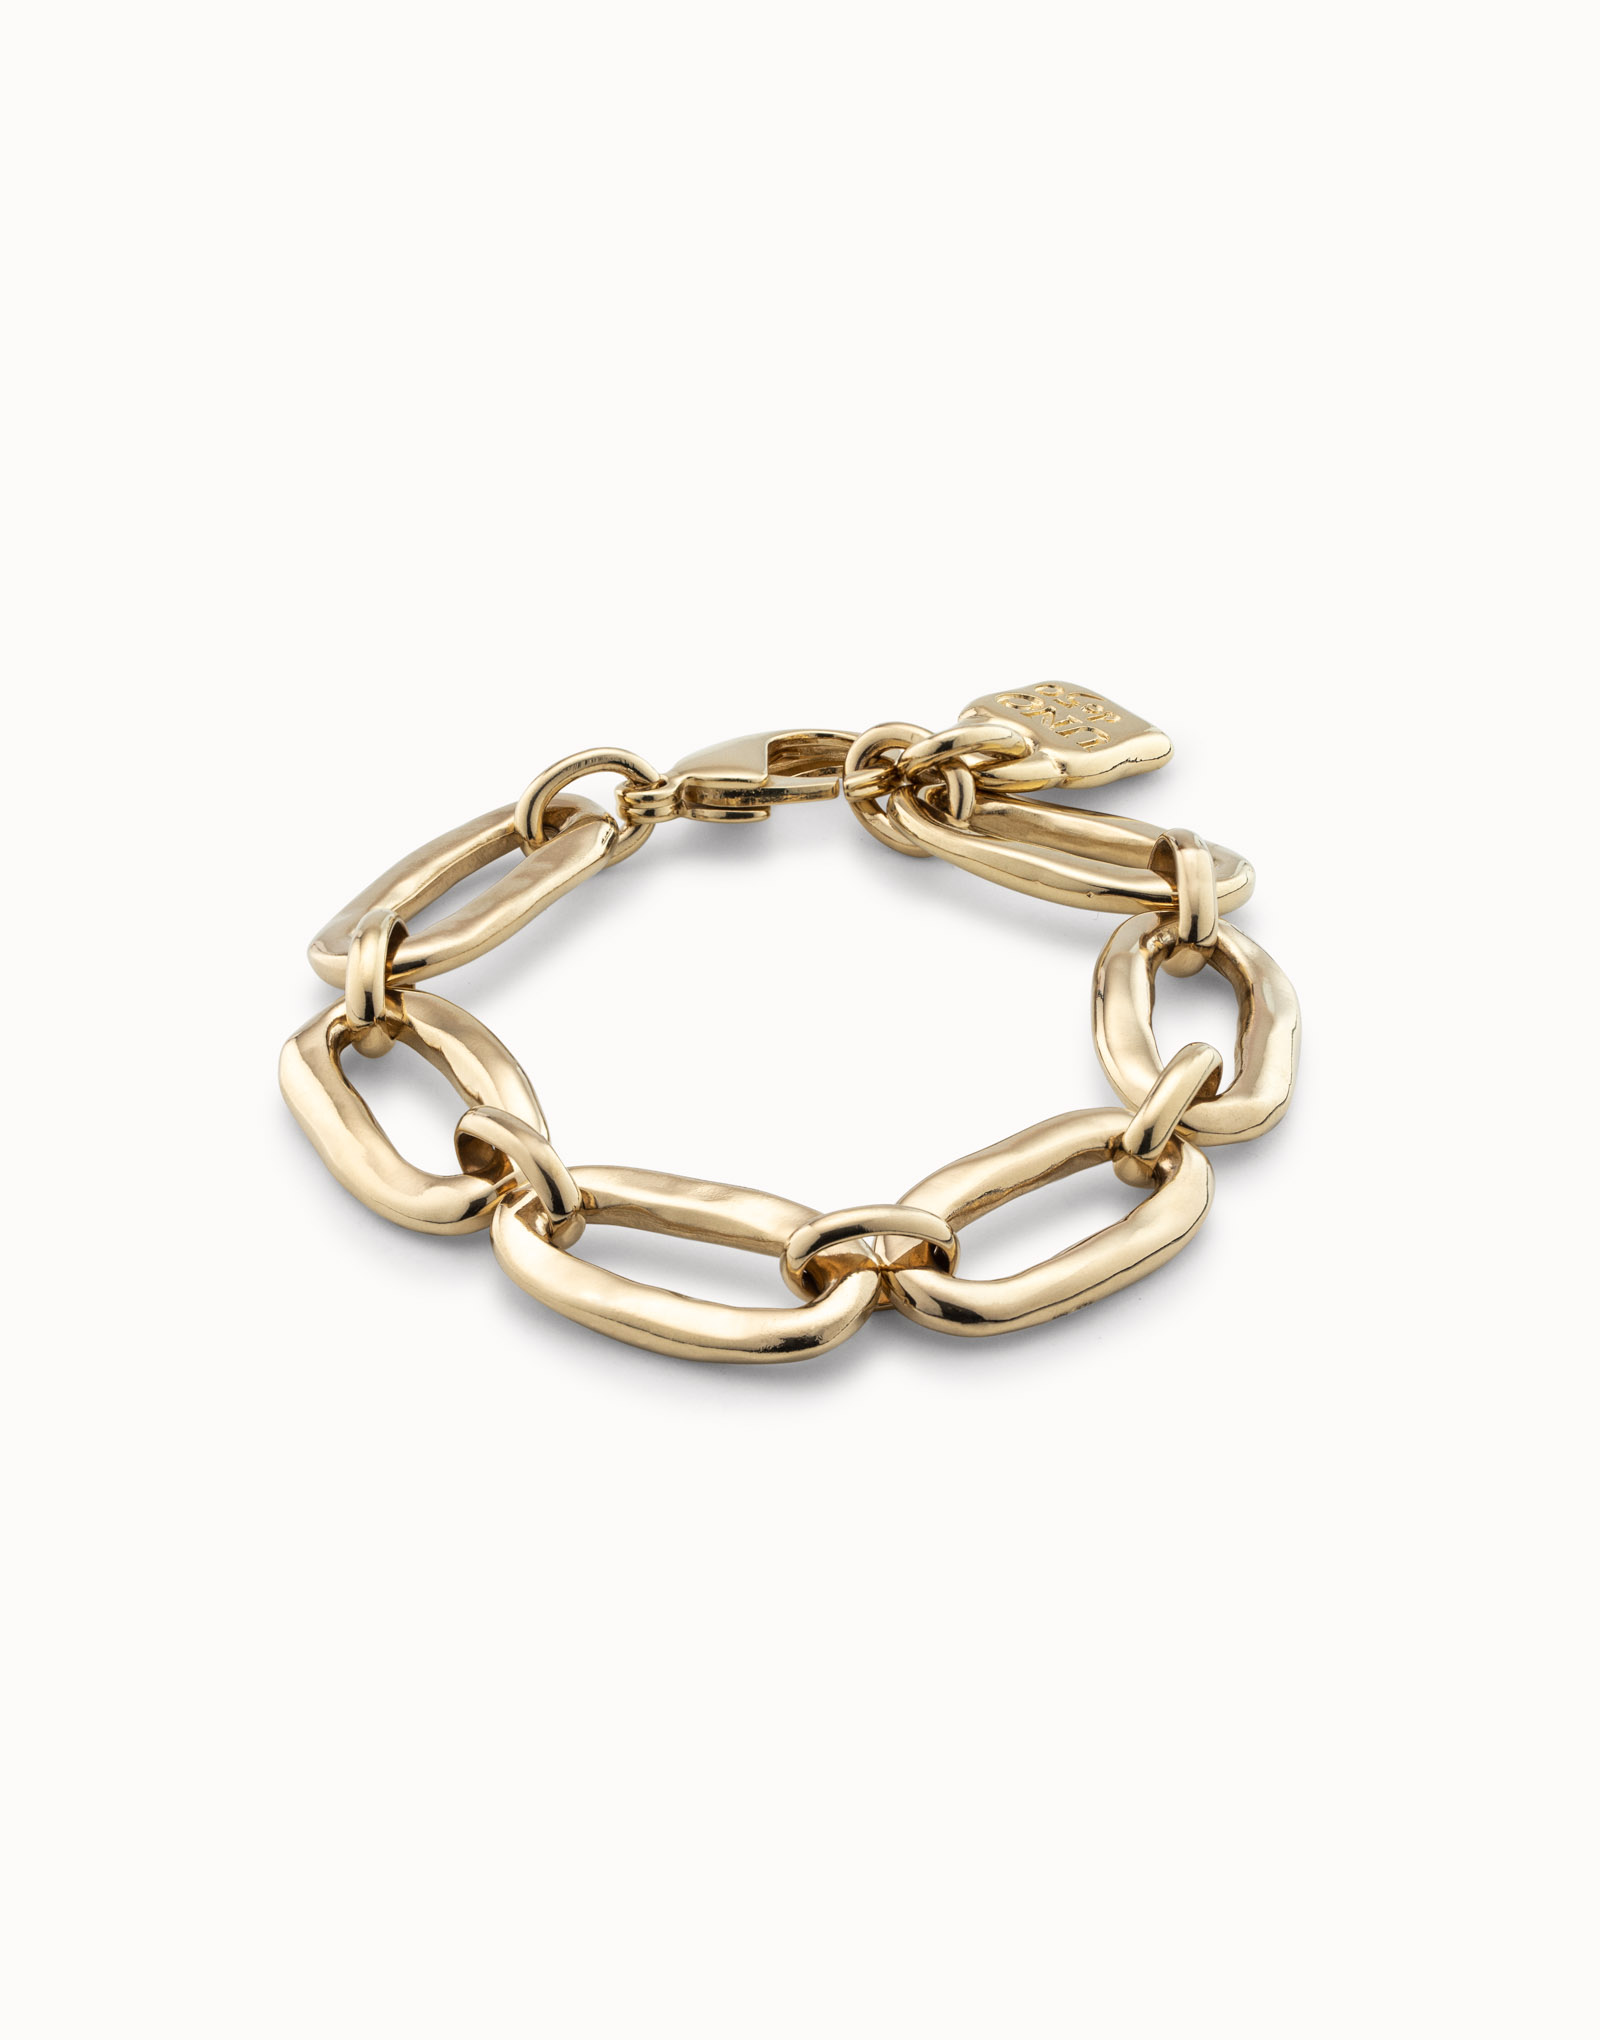 18K gold-plated oval link bracelet, Golden, large image number null